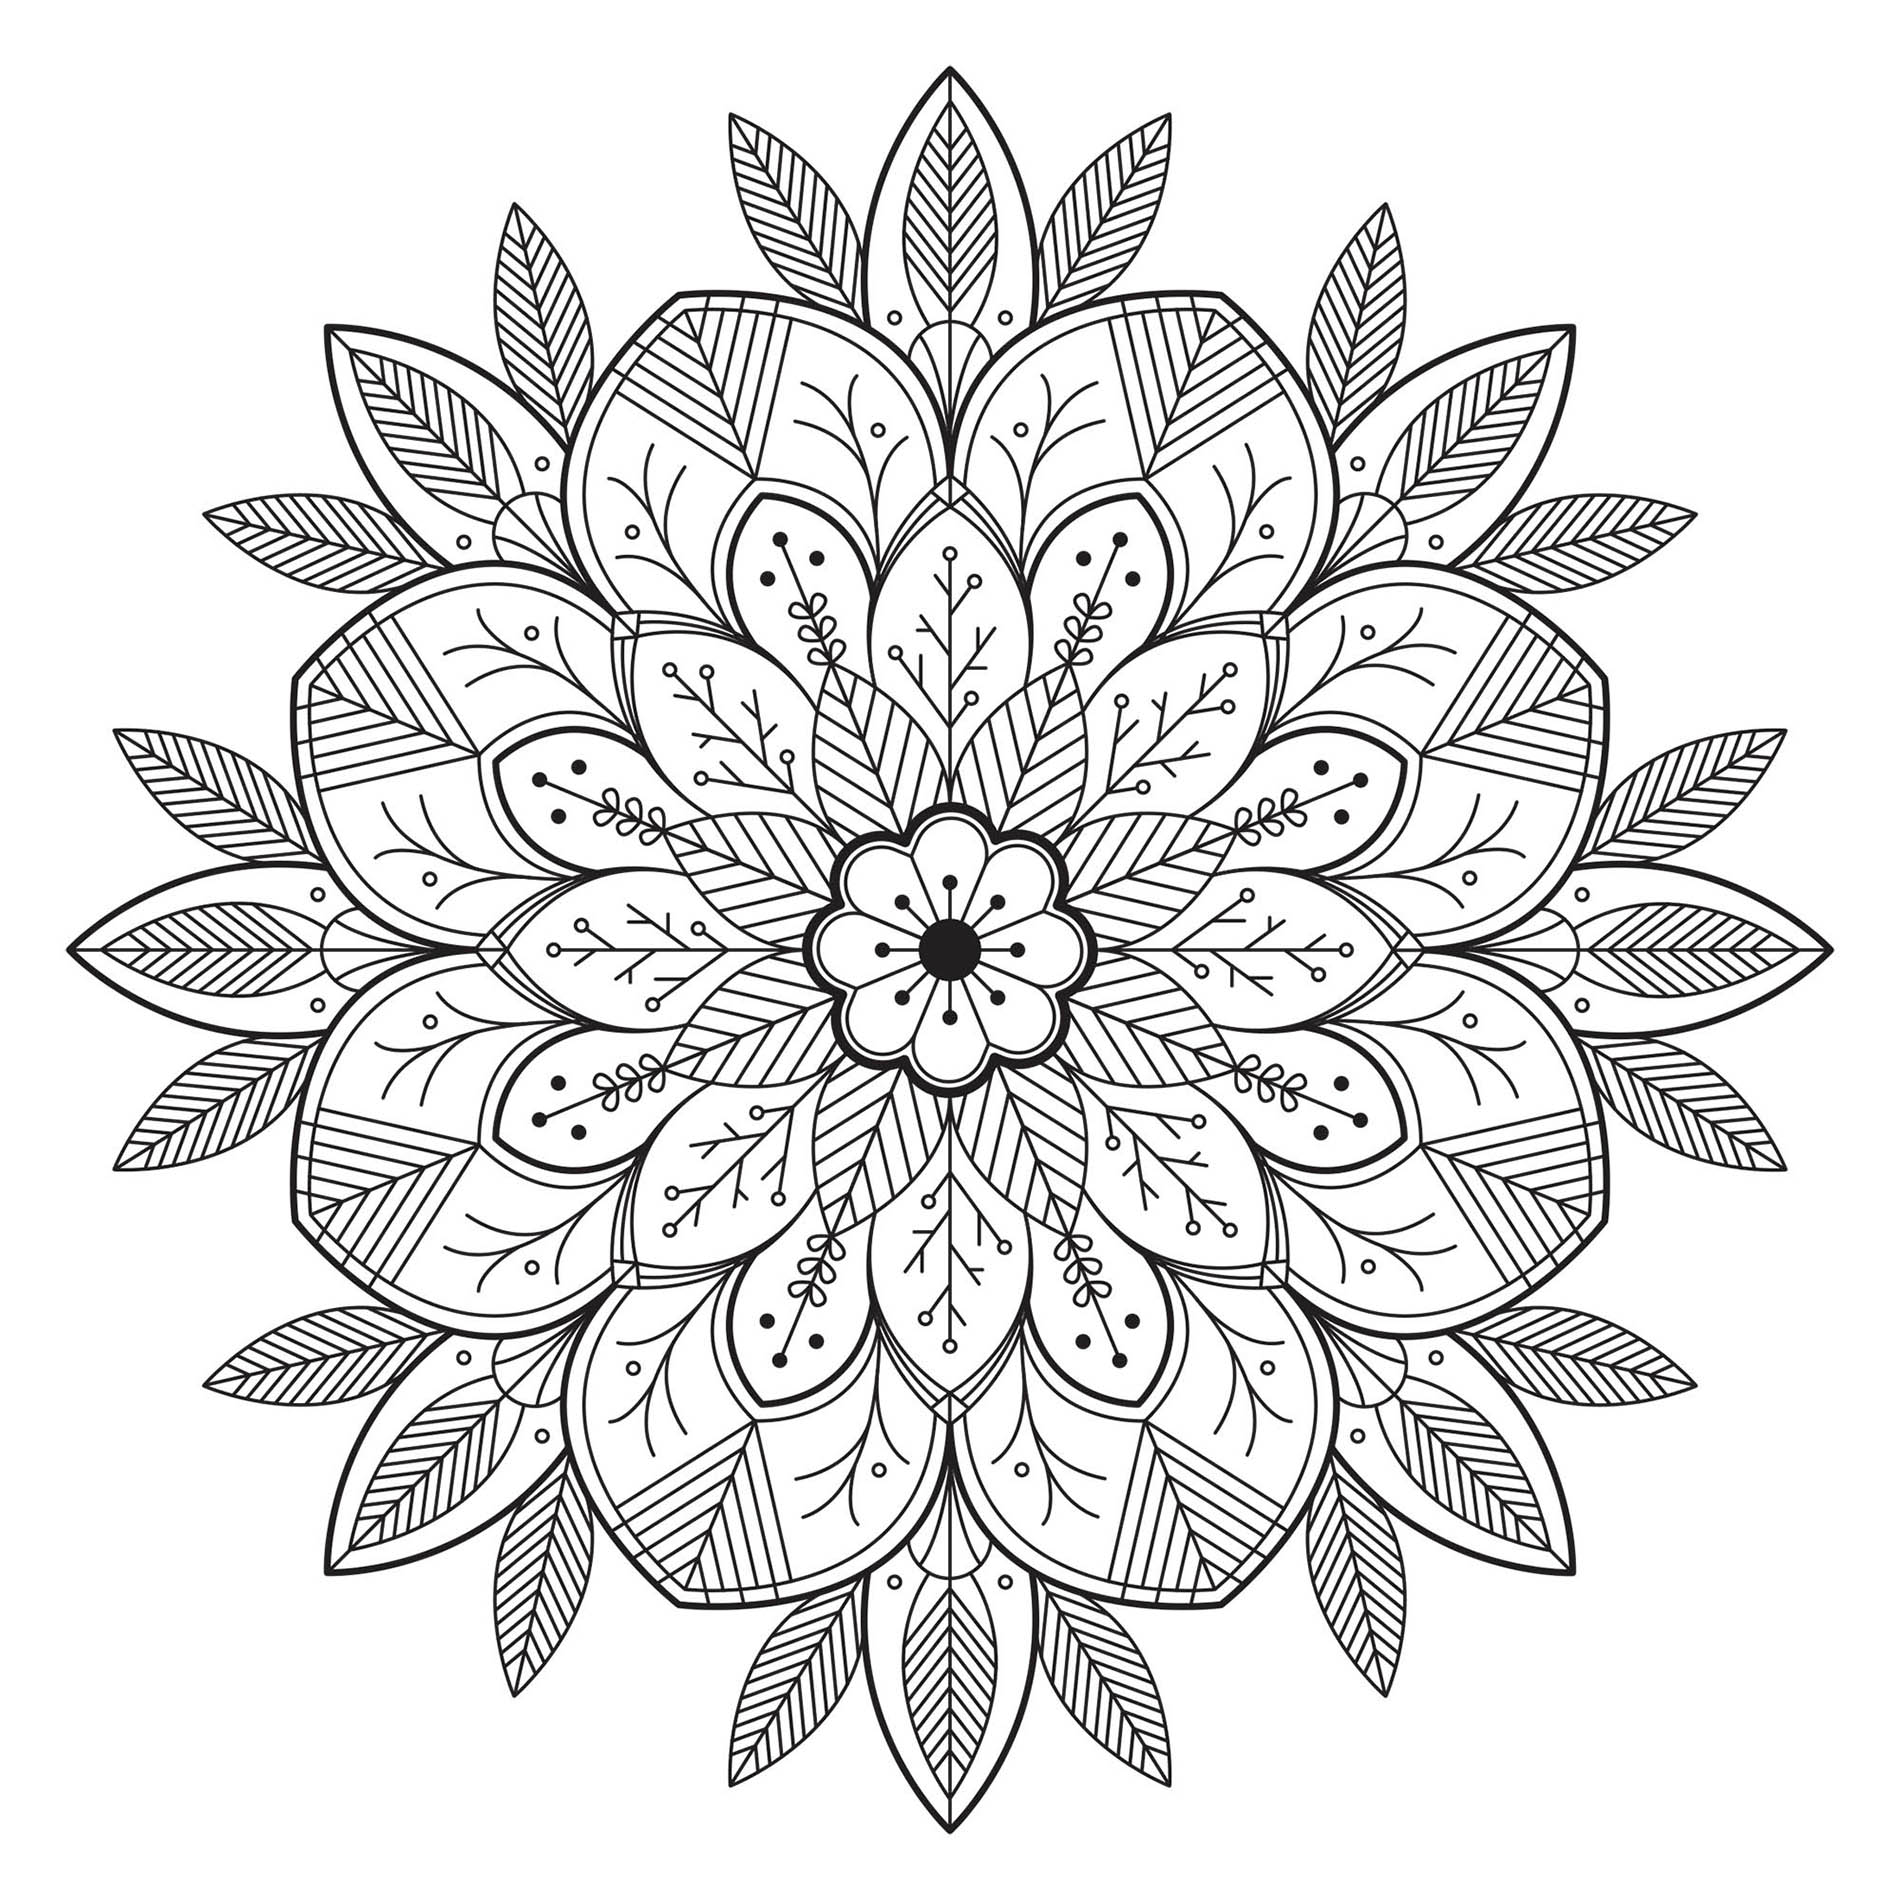 Mandala avec Fleurs et Feuilles très réalistes. Intégrez-y les couleurs que vous préférez ! C'est un des préférés des membres du site d'après nos compteurs !!